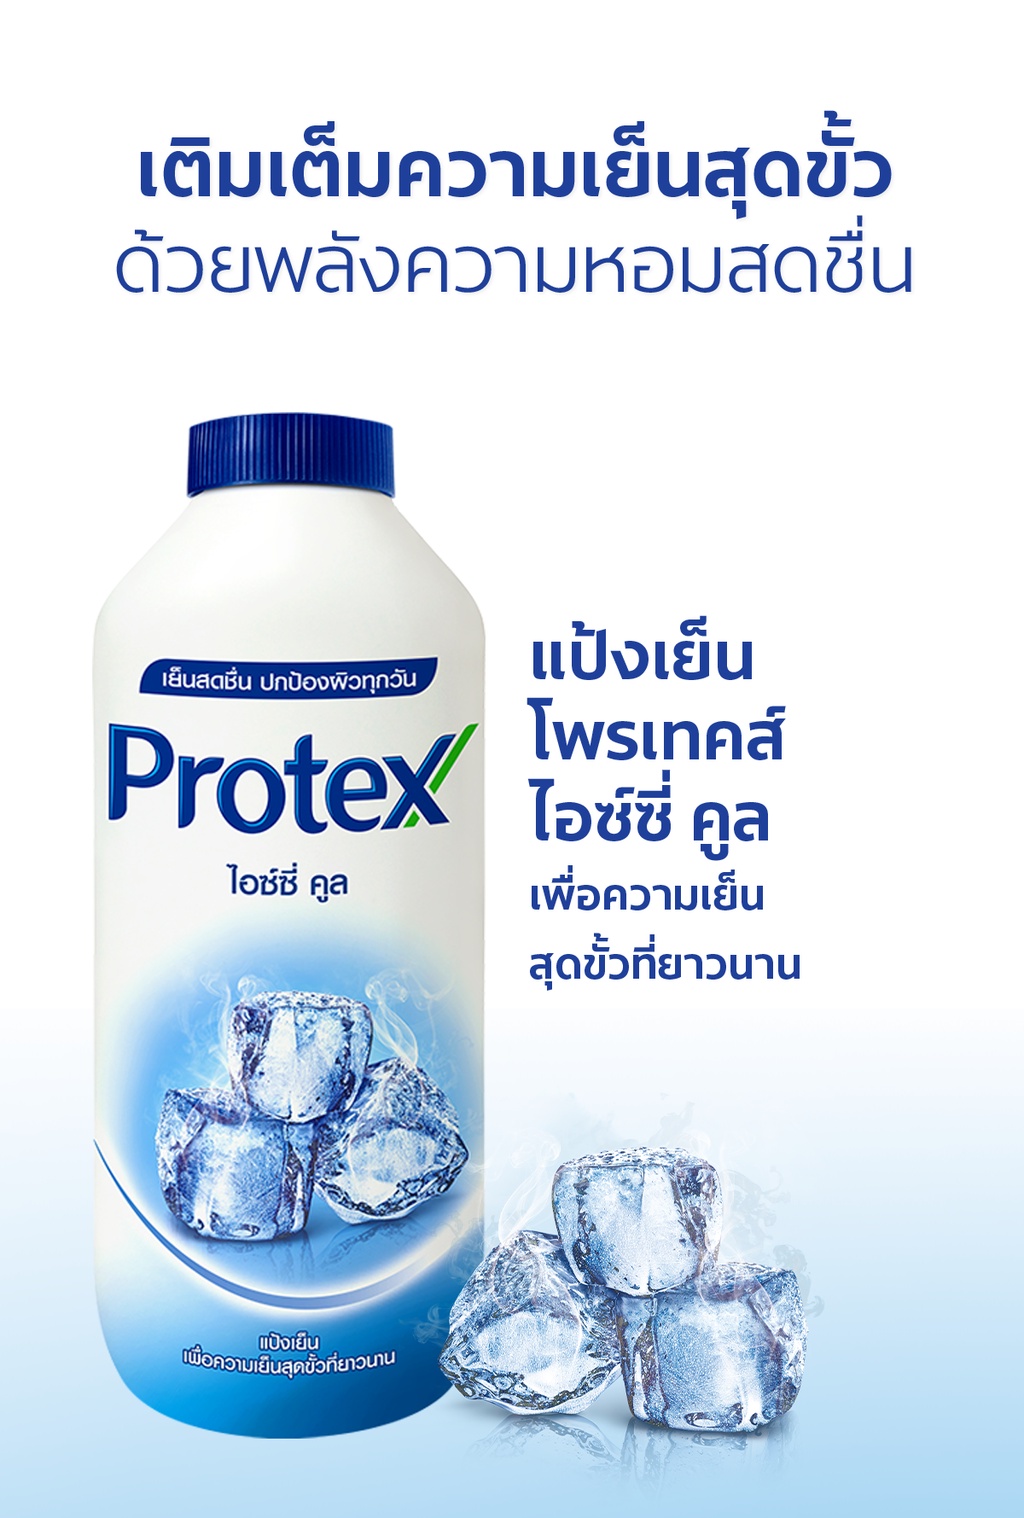 เกี่ยวกับ Protex แป้งเย็น โพรเทคส์ ไอซ์ซี่ คูล 280 ก. รวม 2 ขวด PROTEX Talcum Icy Cool 280g total 2 bottles